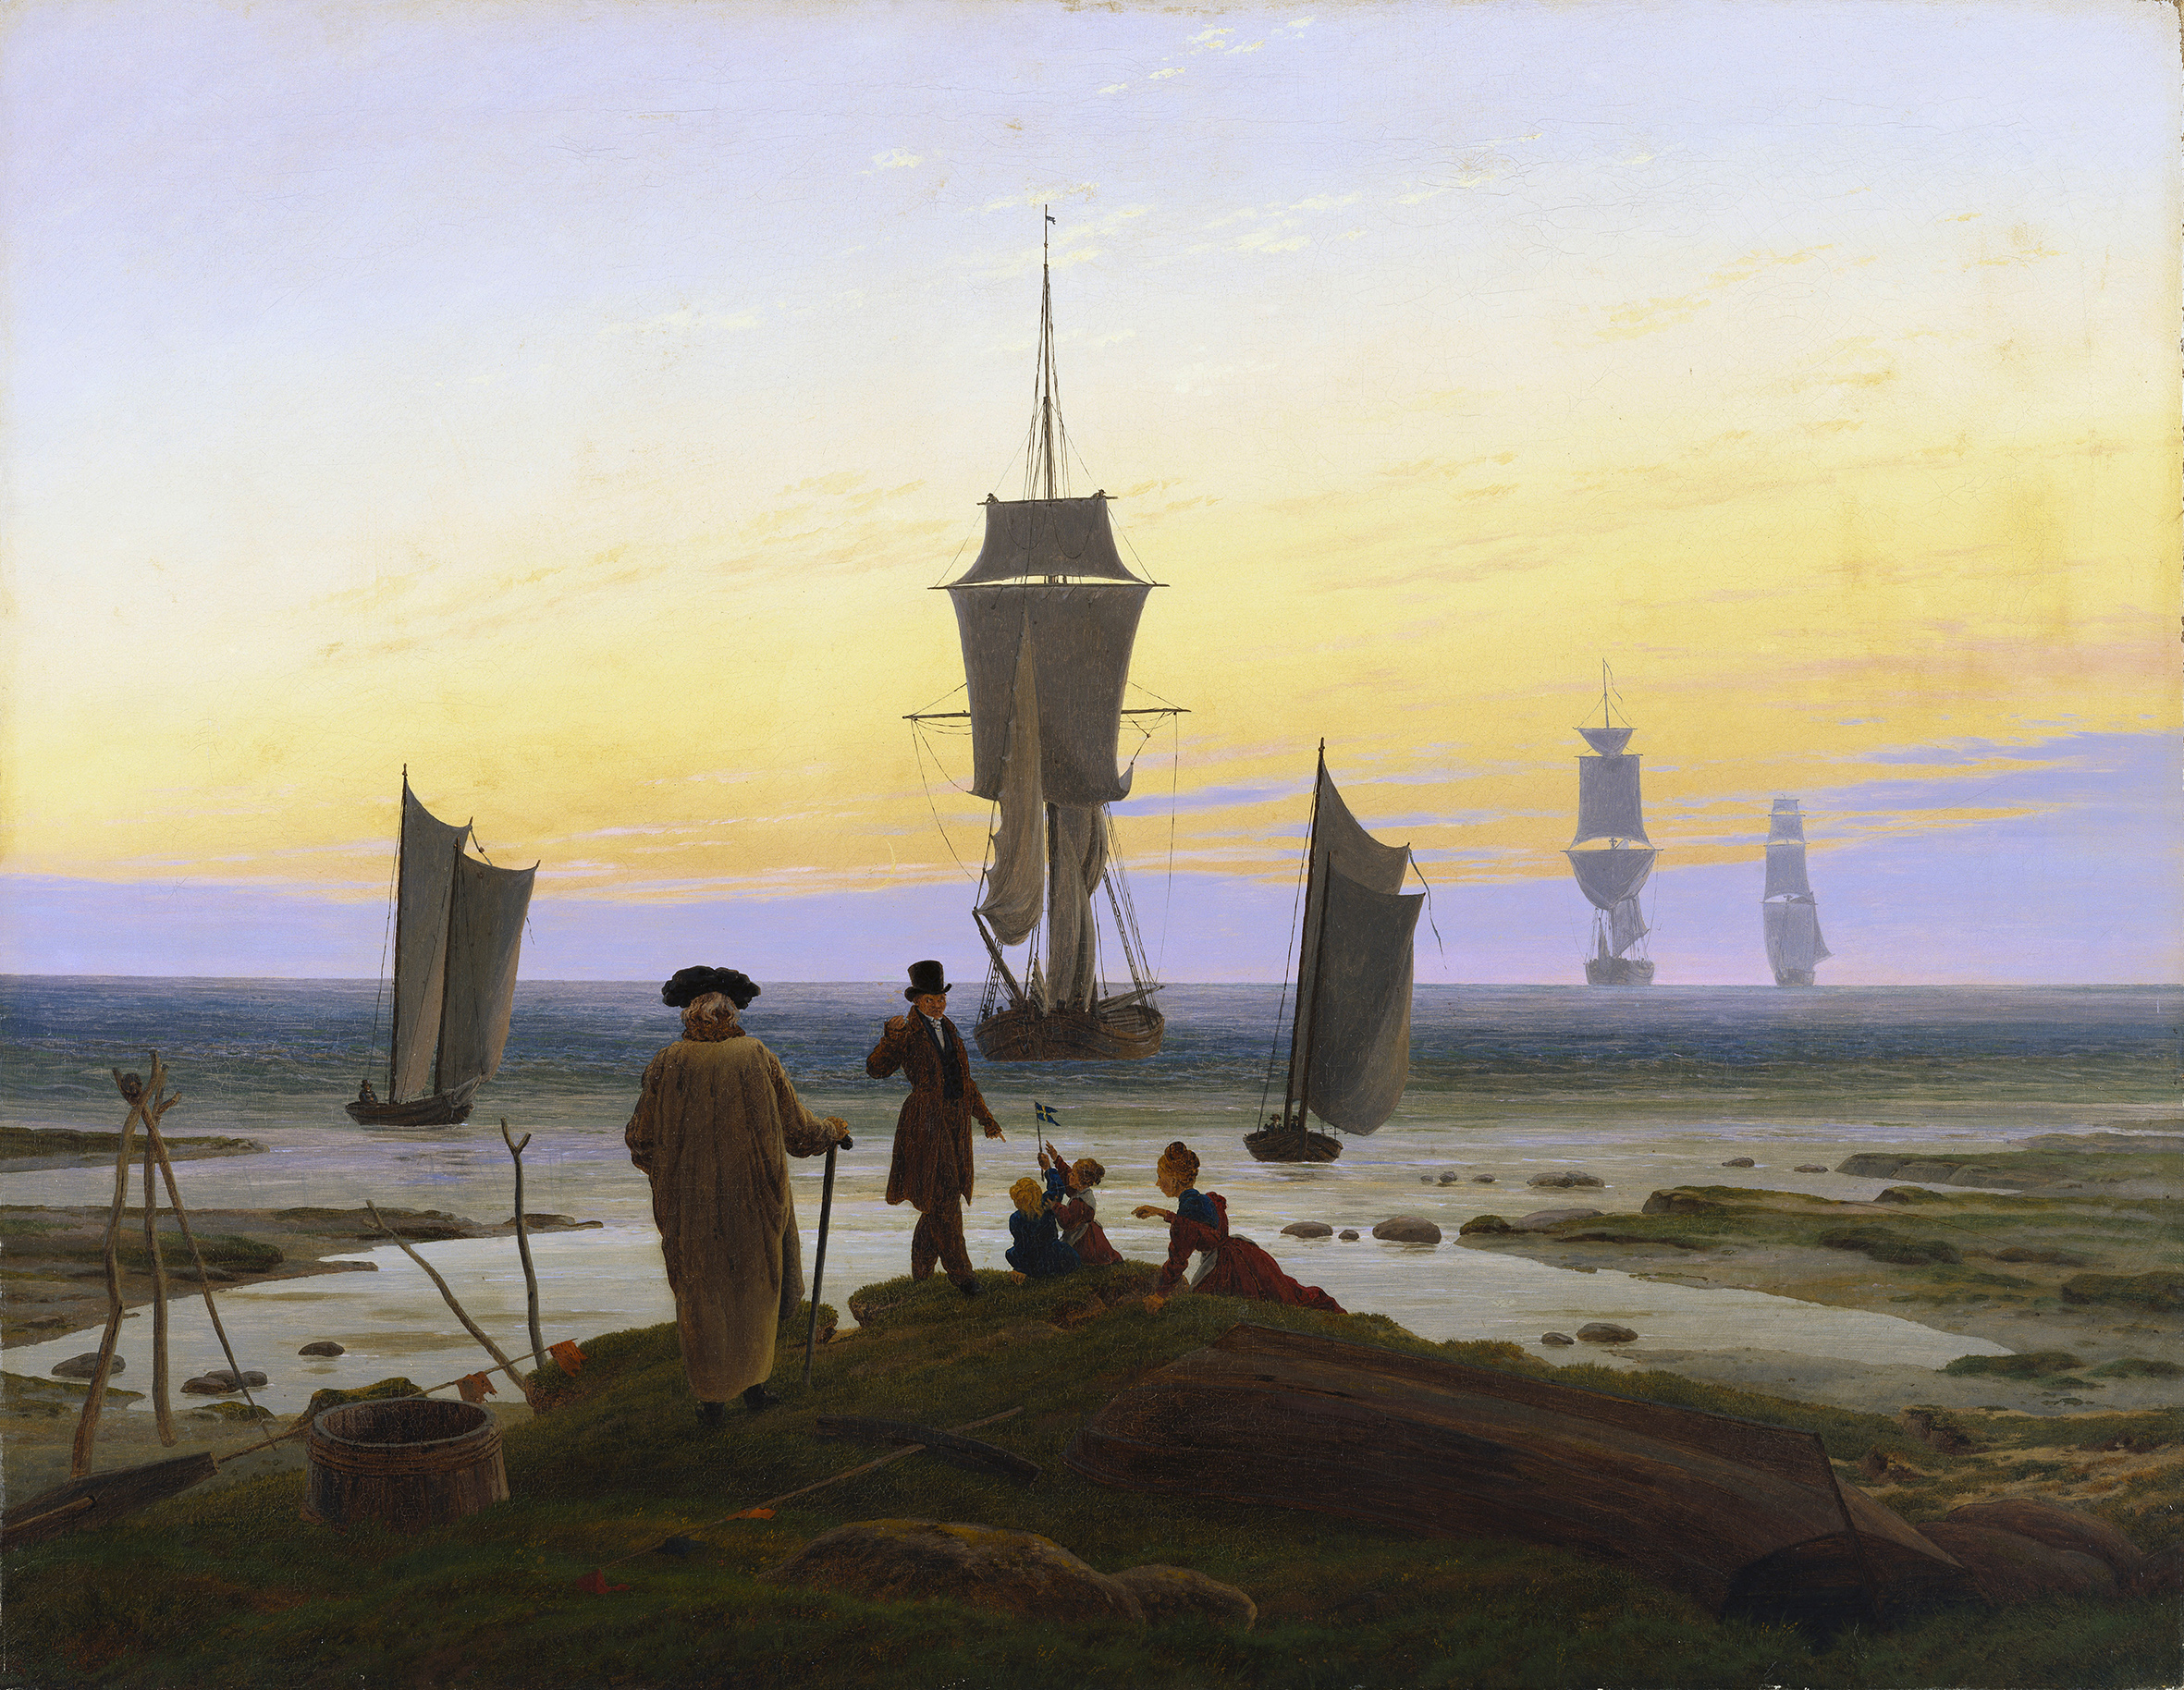 مراحل الحياة by Caspar David Friedrich - 1835 - الأبعاد: 94 × 72.5 سم 